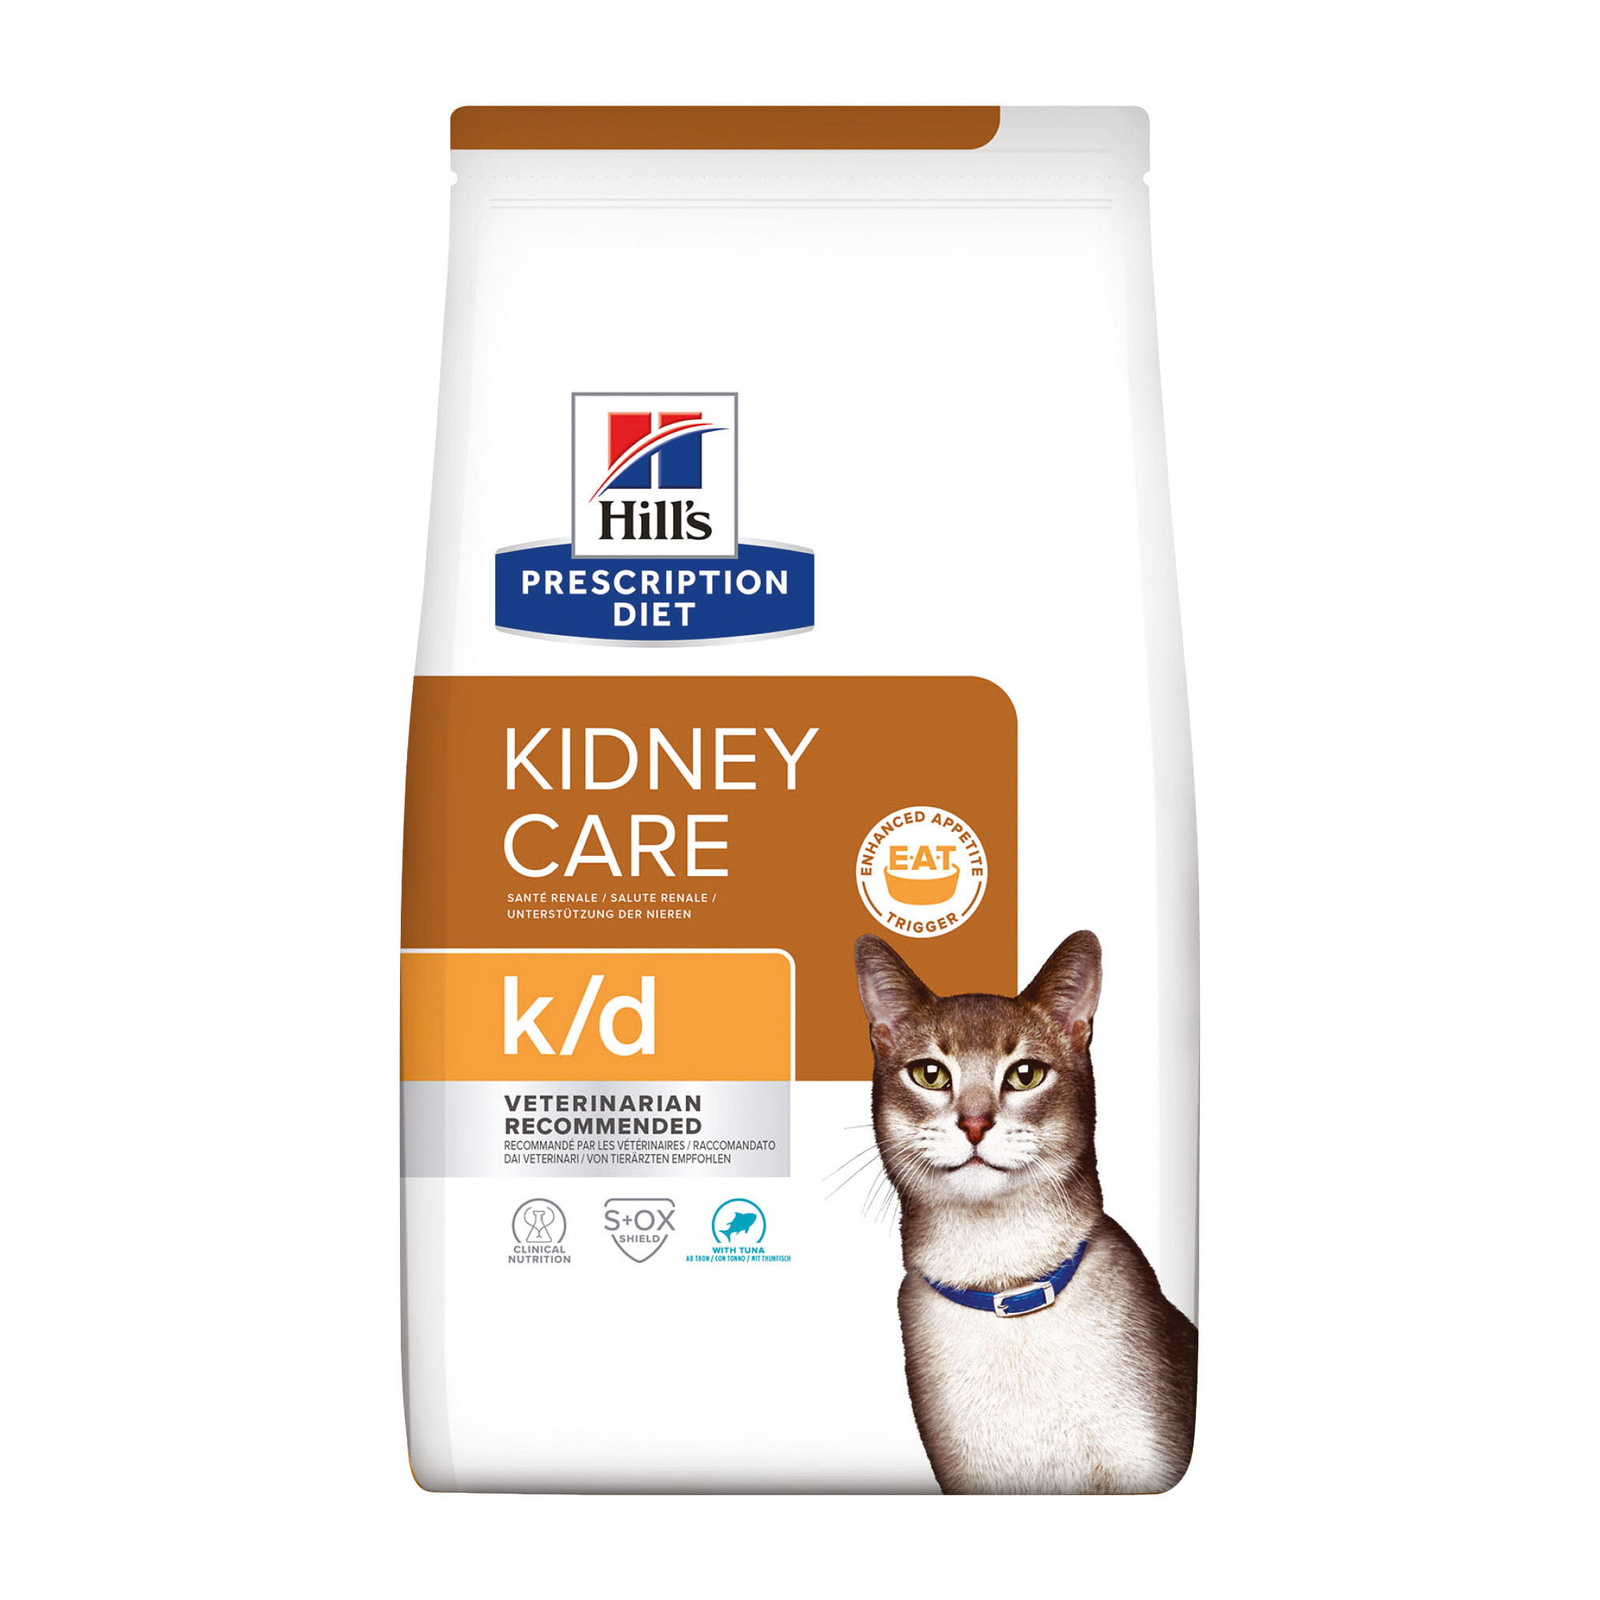 Hill's Prescription Diet k/d Kidney Care сухой диетический, для кошек при профилактике заболеваний почек, с тунцом (400 г) Hill's Prescription Diet k/d Kidney Care сухой диетический, для кошек при профилактике заболеваний п - фото 1